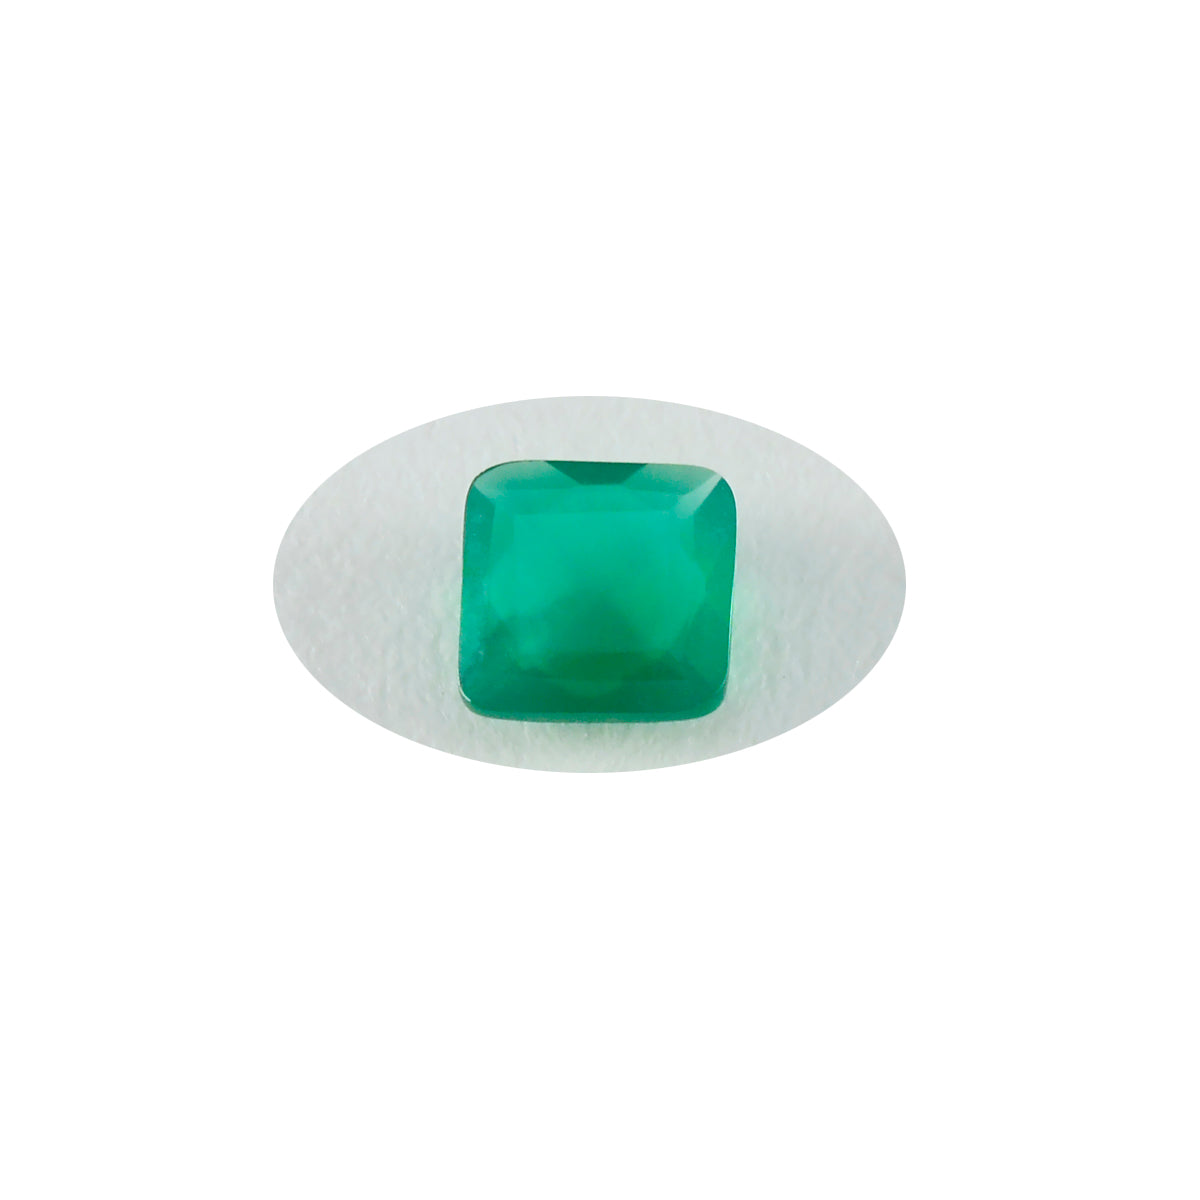 Riyogems 1 Stück echter grüner Jaspis, facettiert, 7 x 7 mm, quadratische Form, Stein von hervorragender Qualität